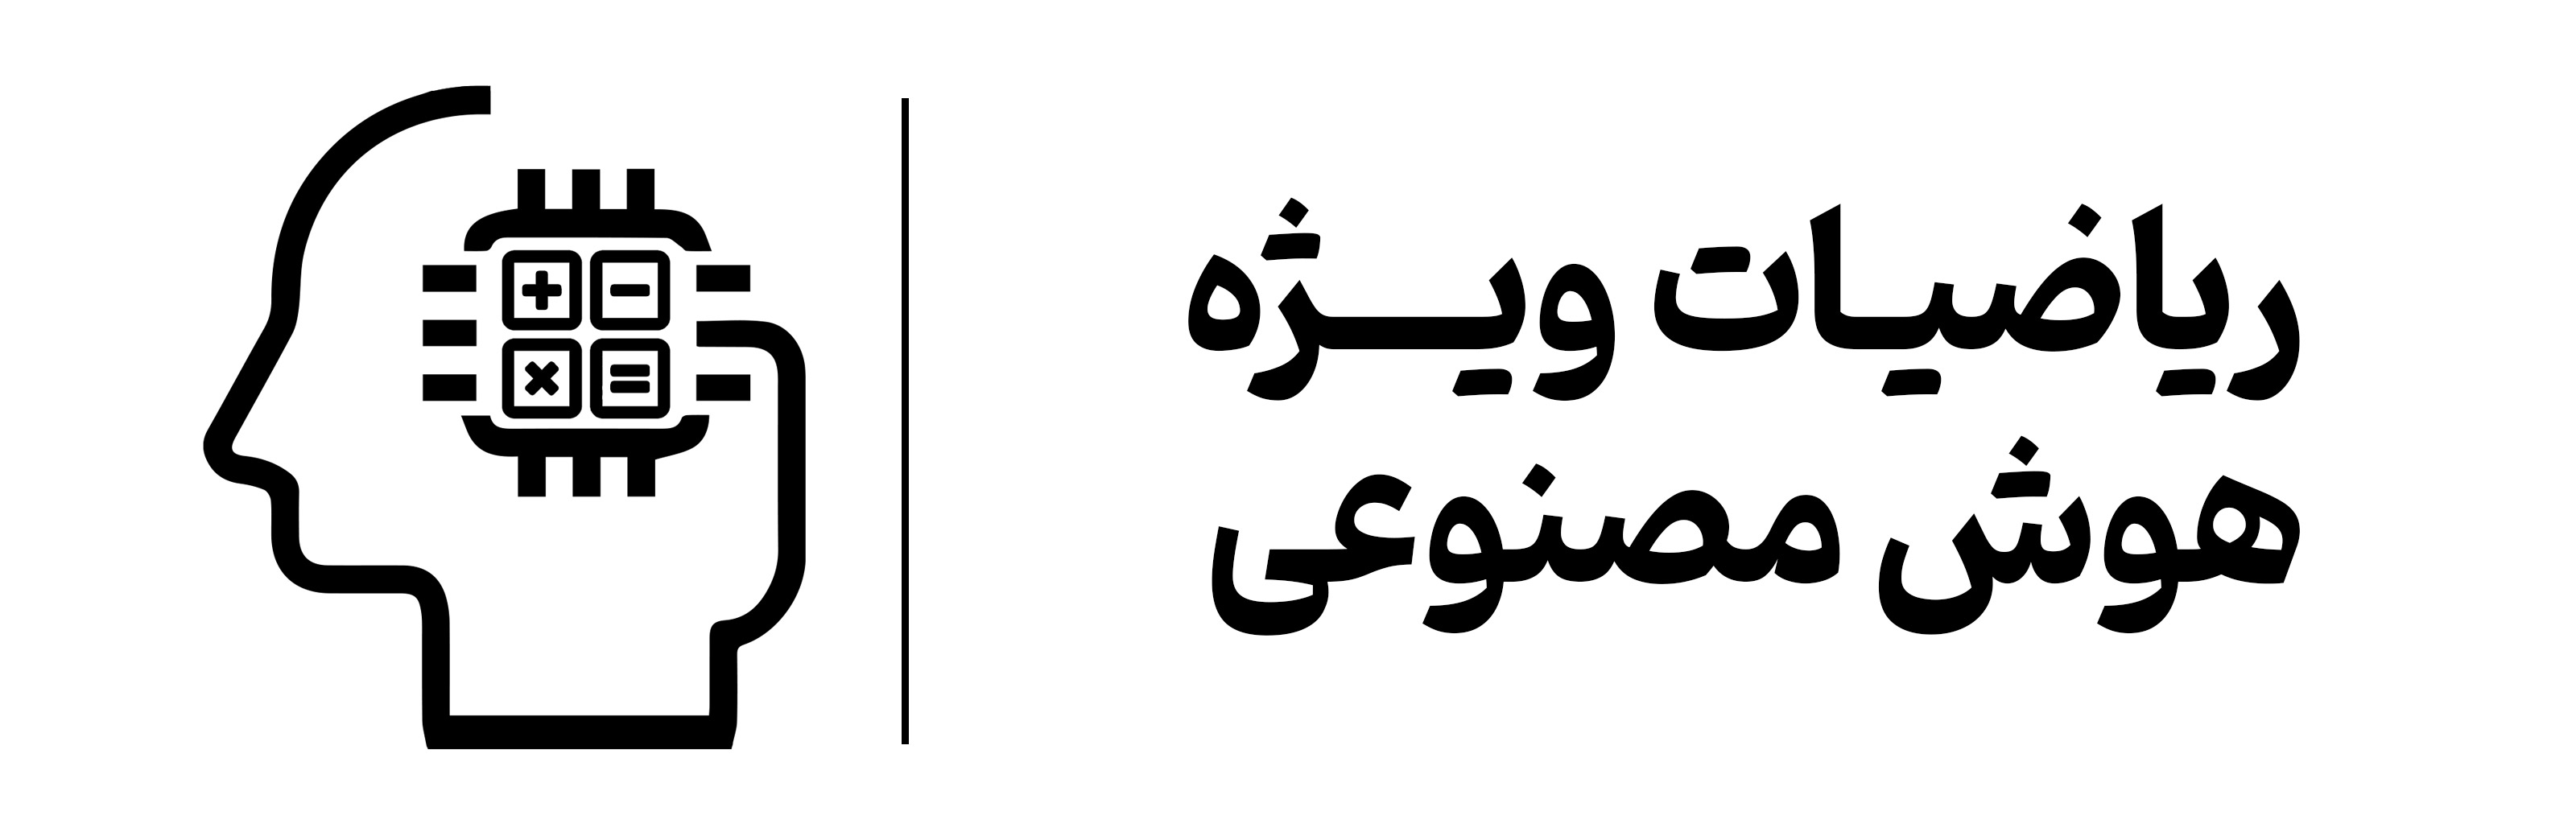 دوره ریاضیات ویژه هوش مصنوعی در اصفهان مهرگان